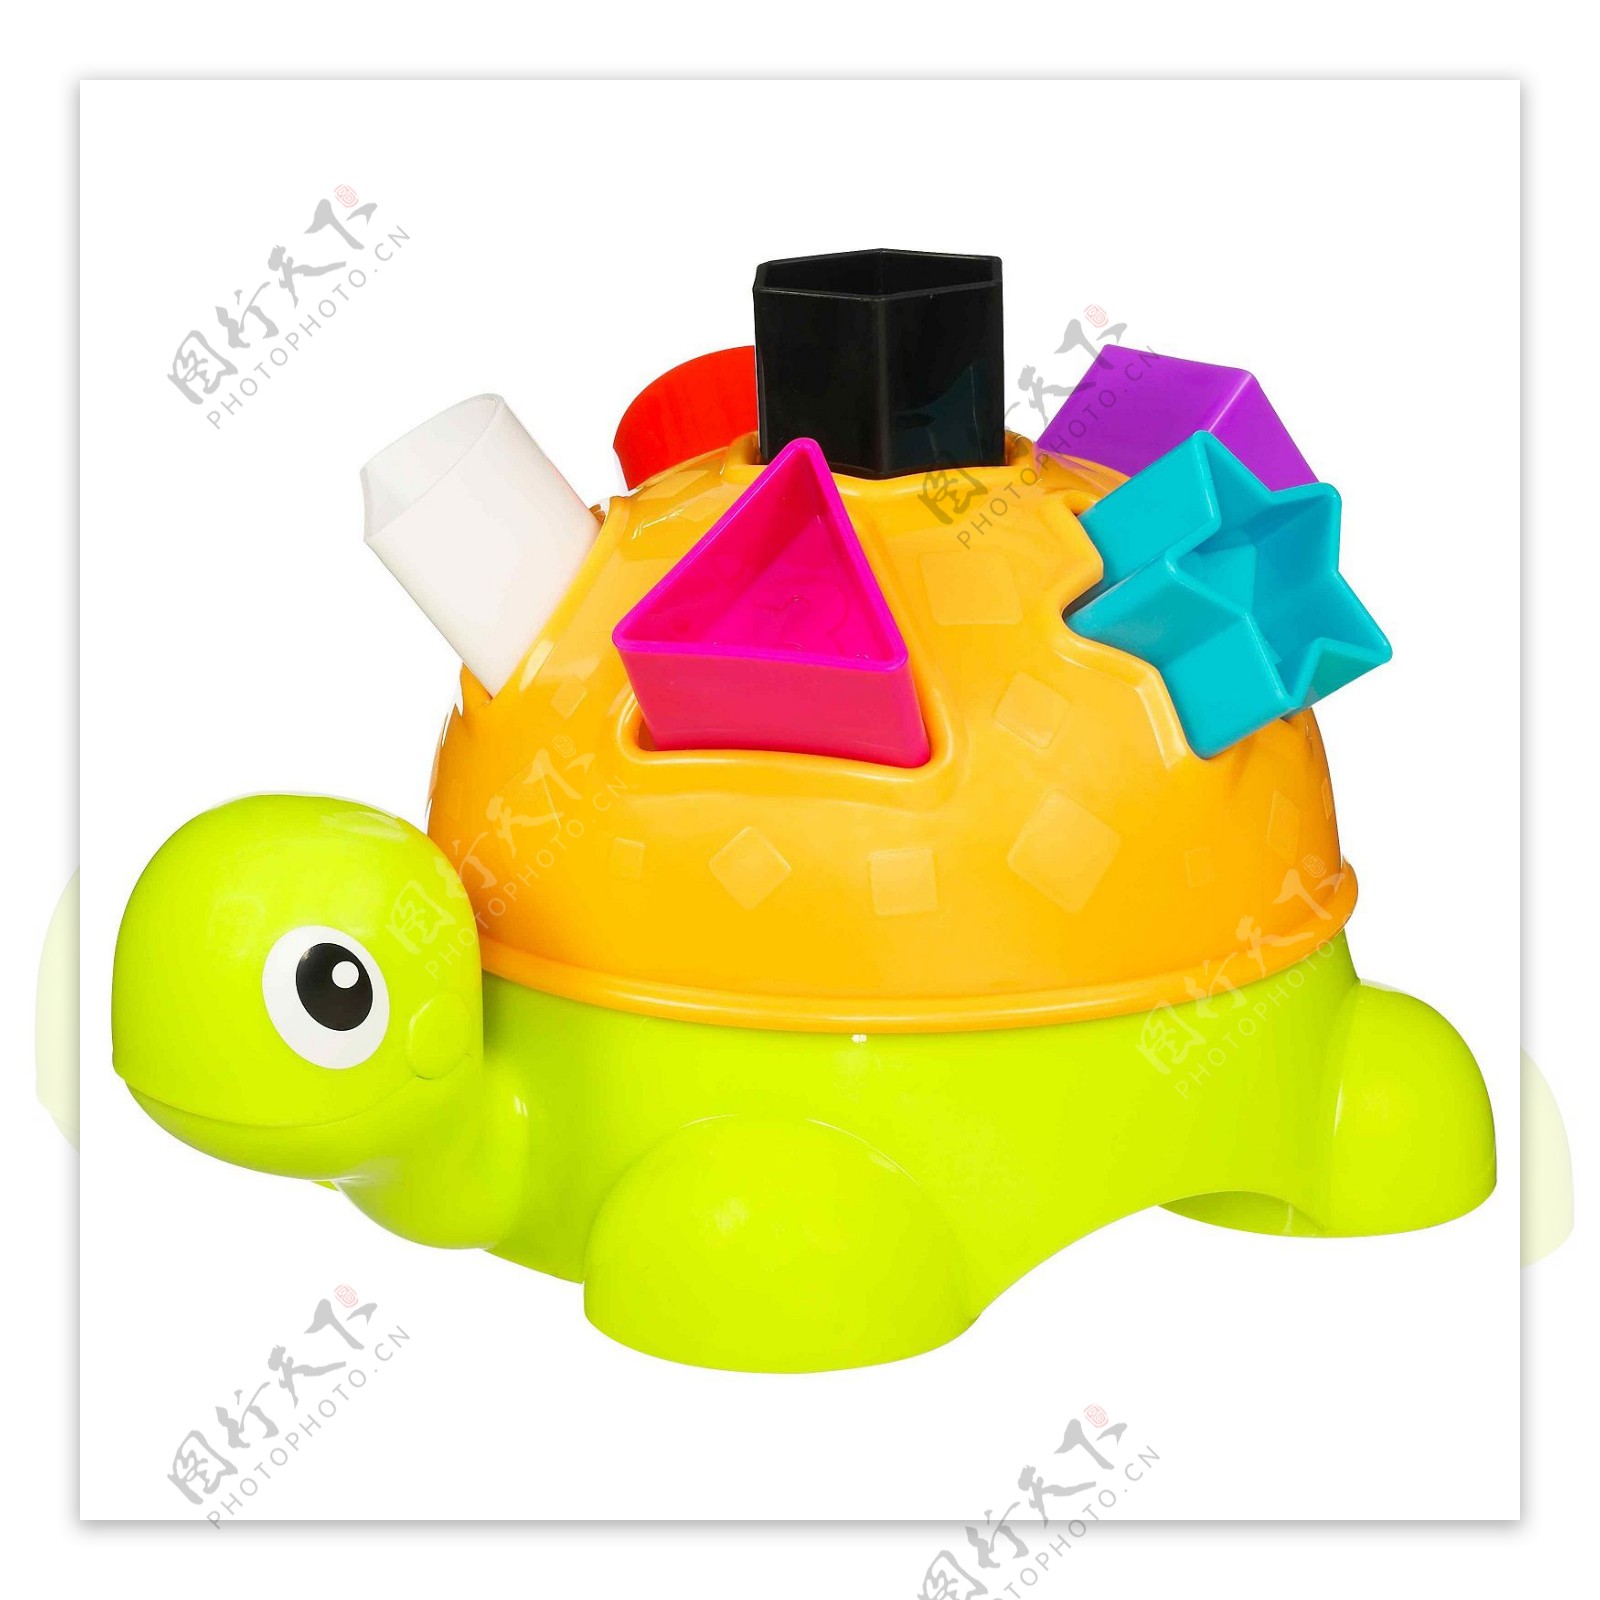 可爱的乌龟玩具图片